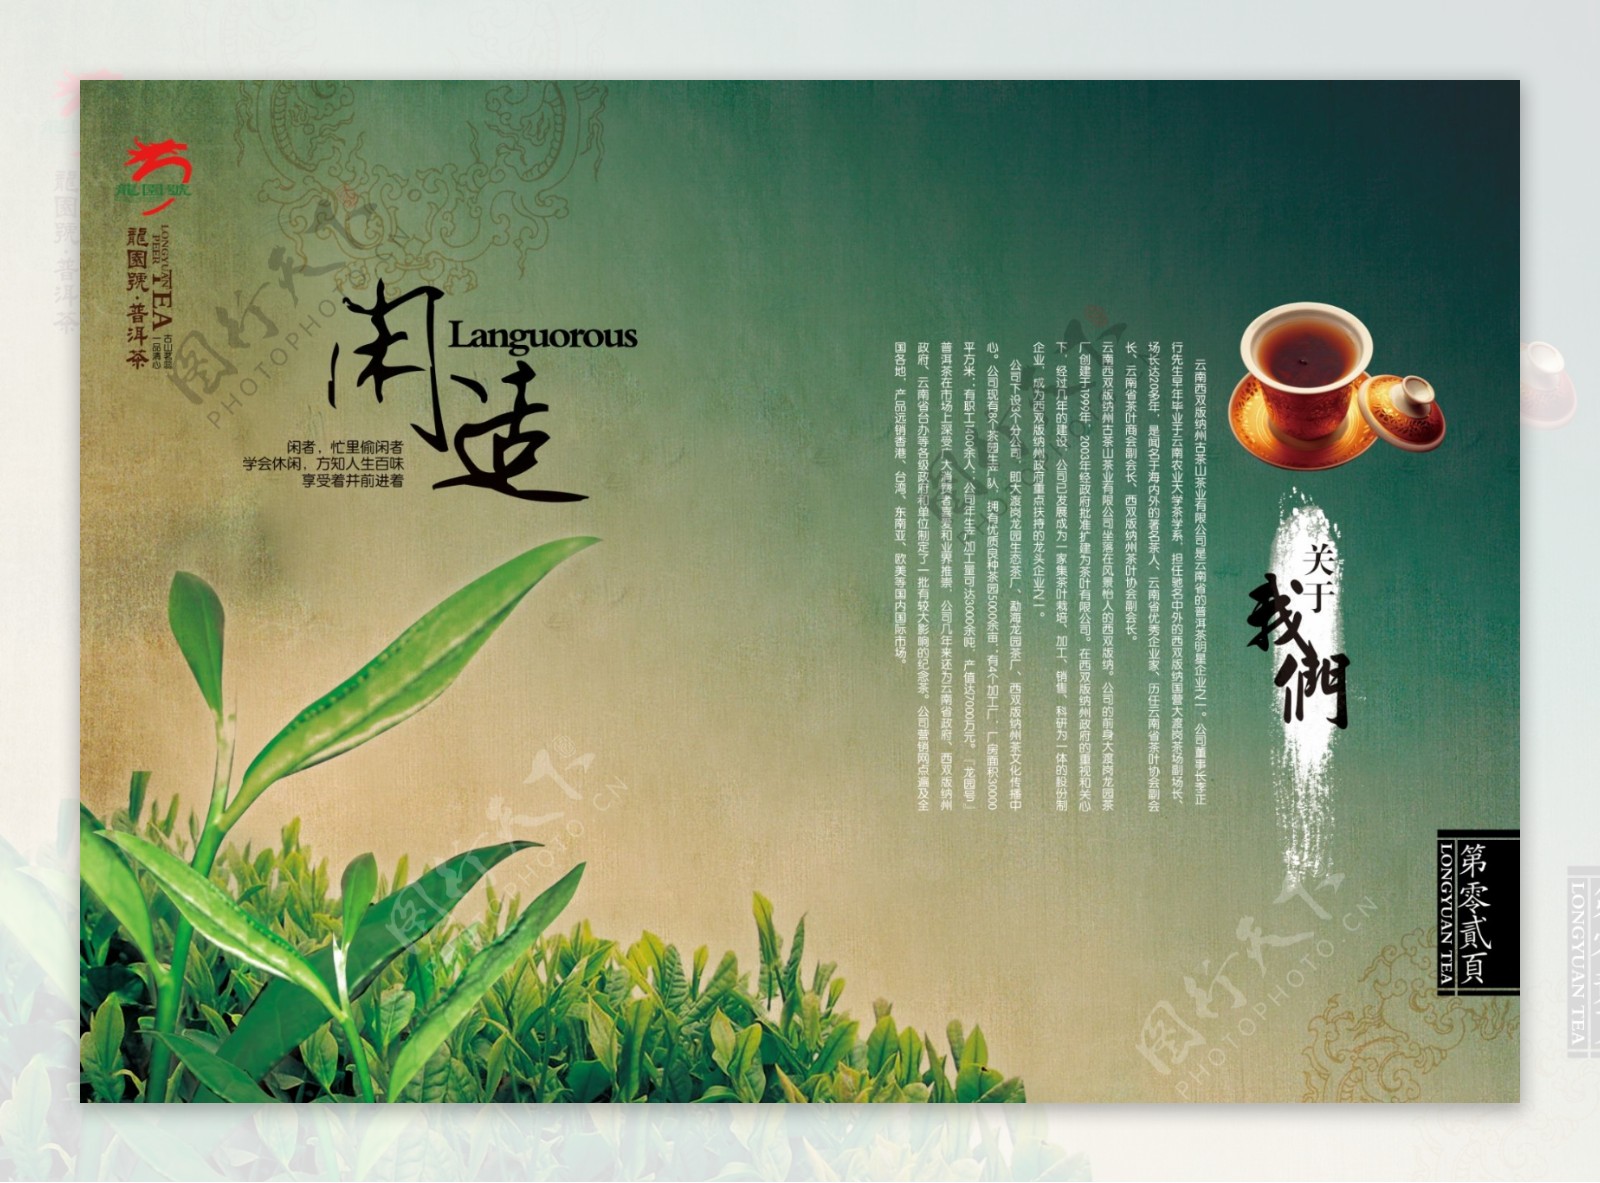 中国风茶叶画册模板下载